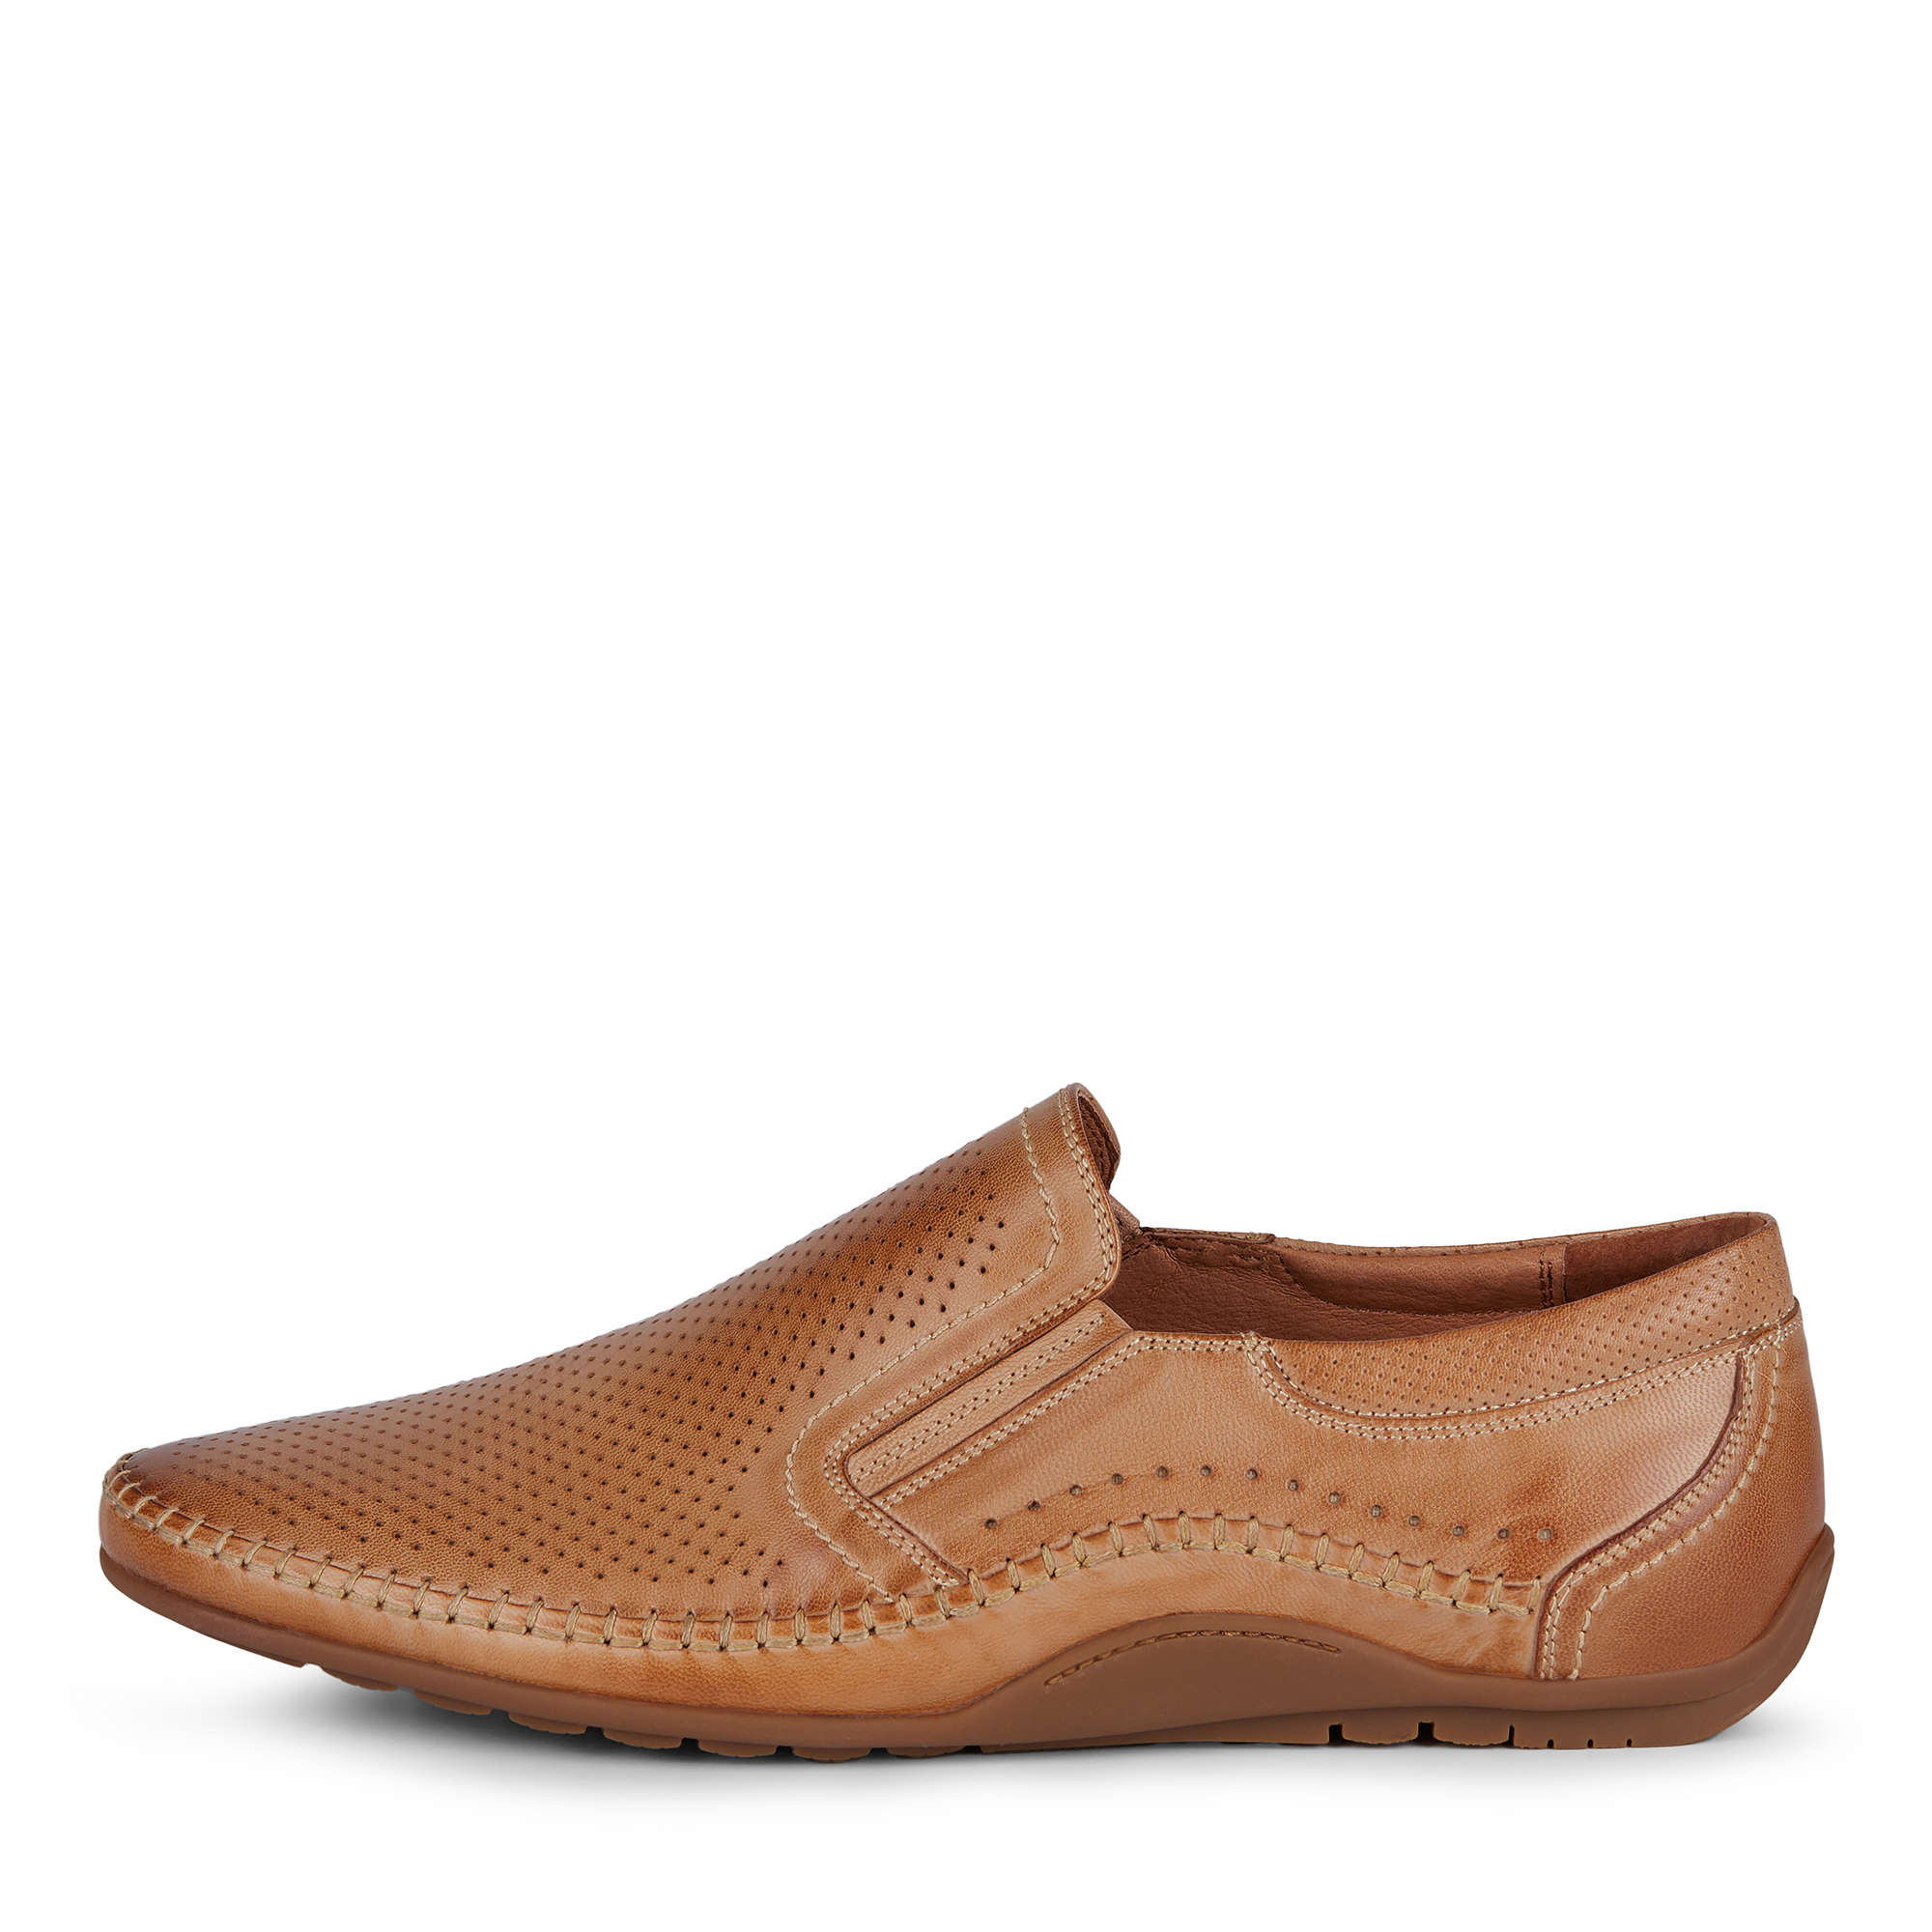 Туфли/полуботинки Salamander 058-033A-1109, цвет светло-коричневый, размер 40